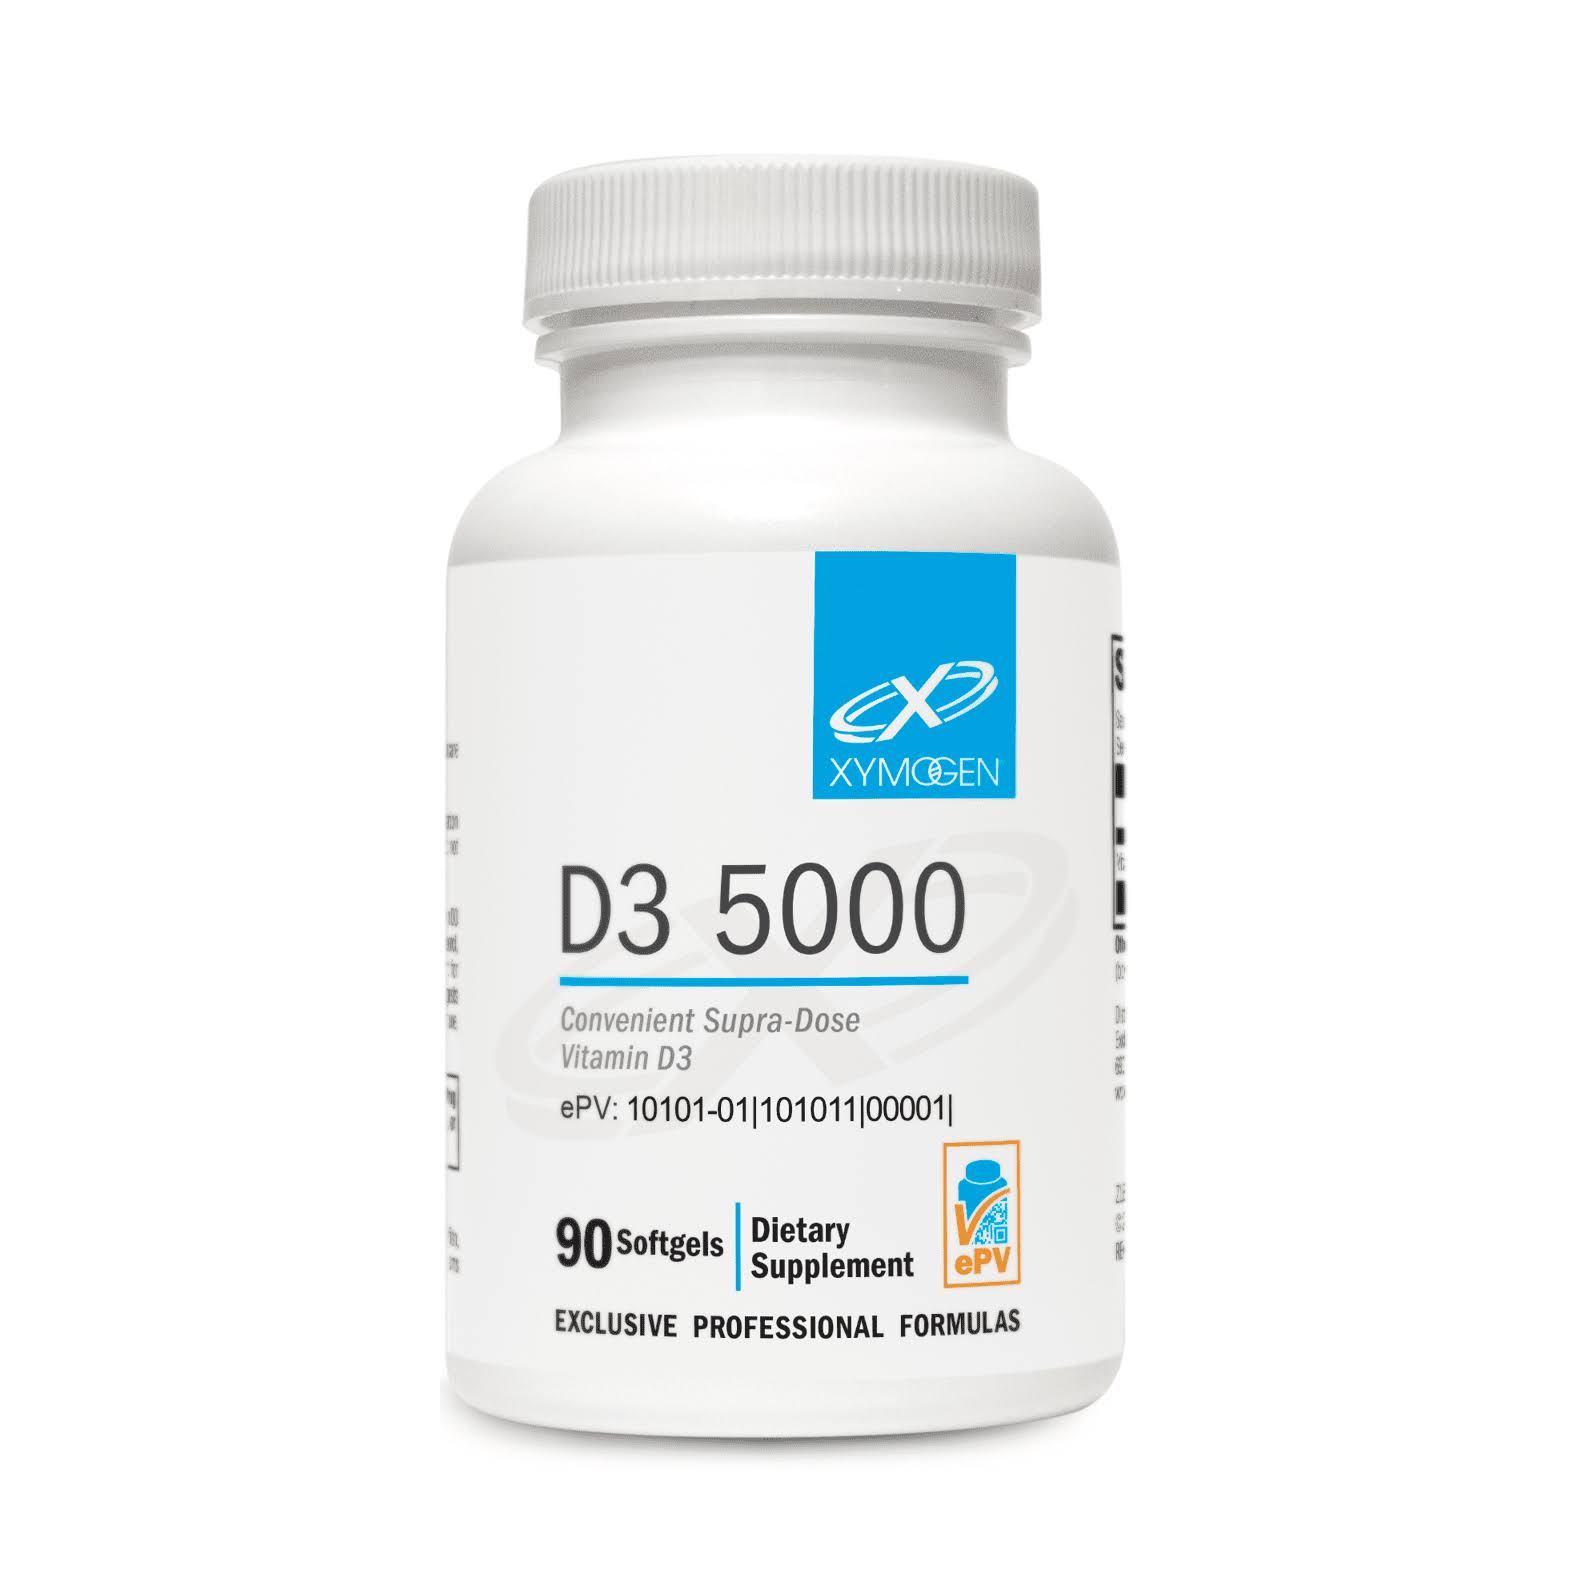 Xymogen D3 5000 Dietary Supplement - 90 Softgels